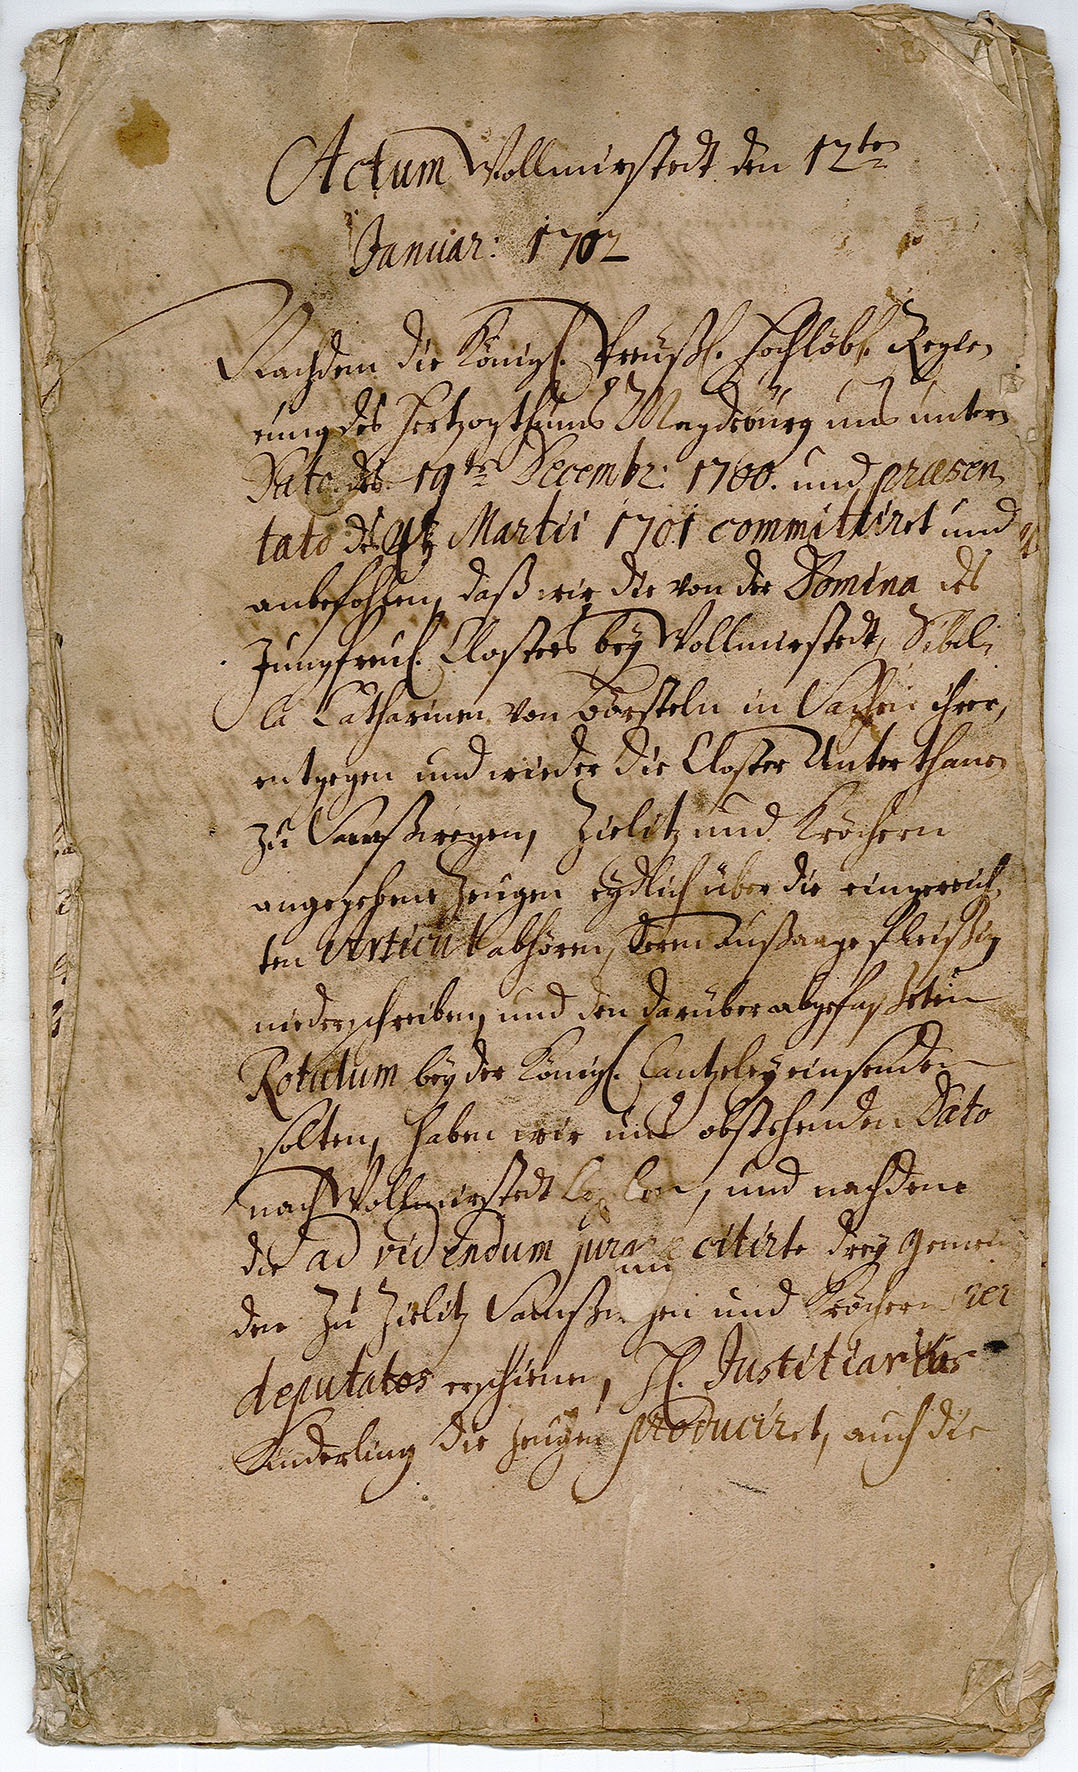 Akte betreffend Wolmirstedt vom 12. Januar 1702 (Museum Wolmirstedt RR-F)